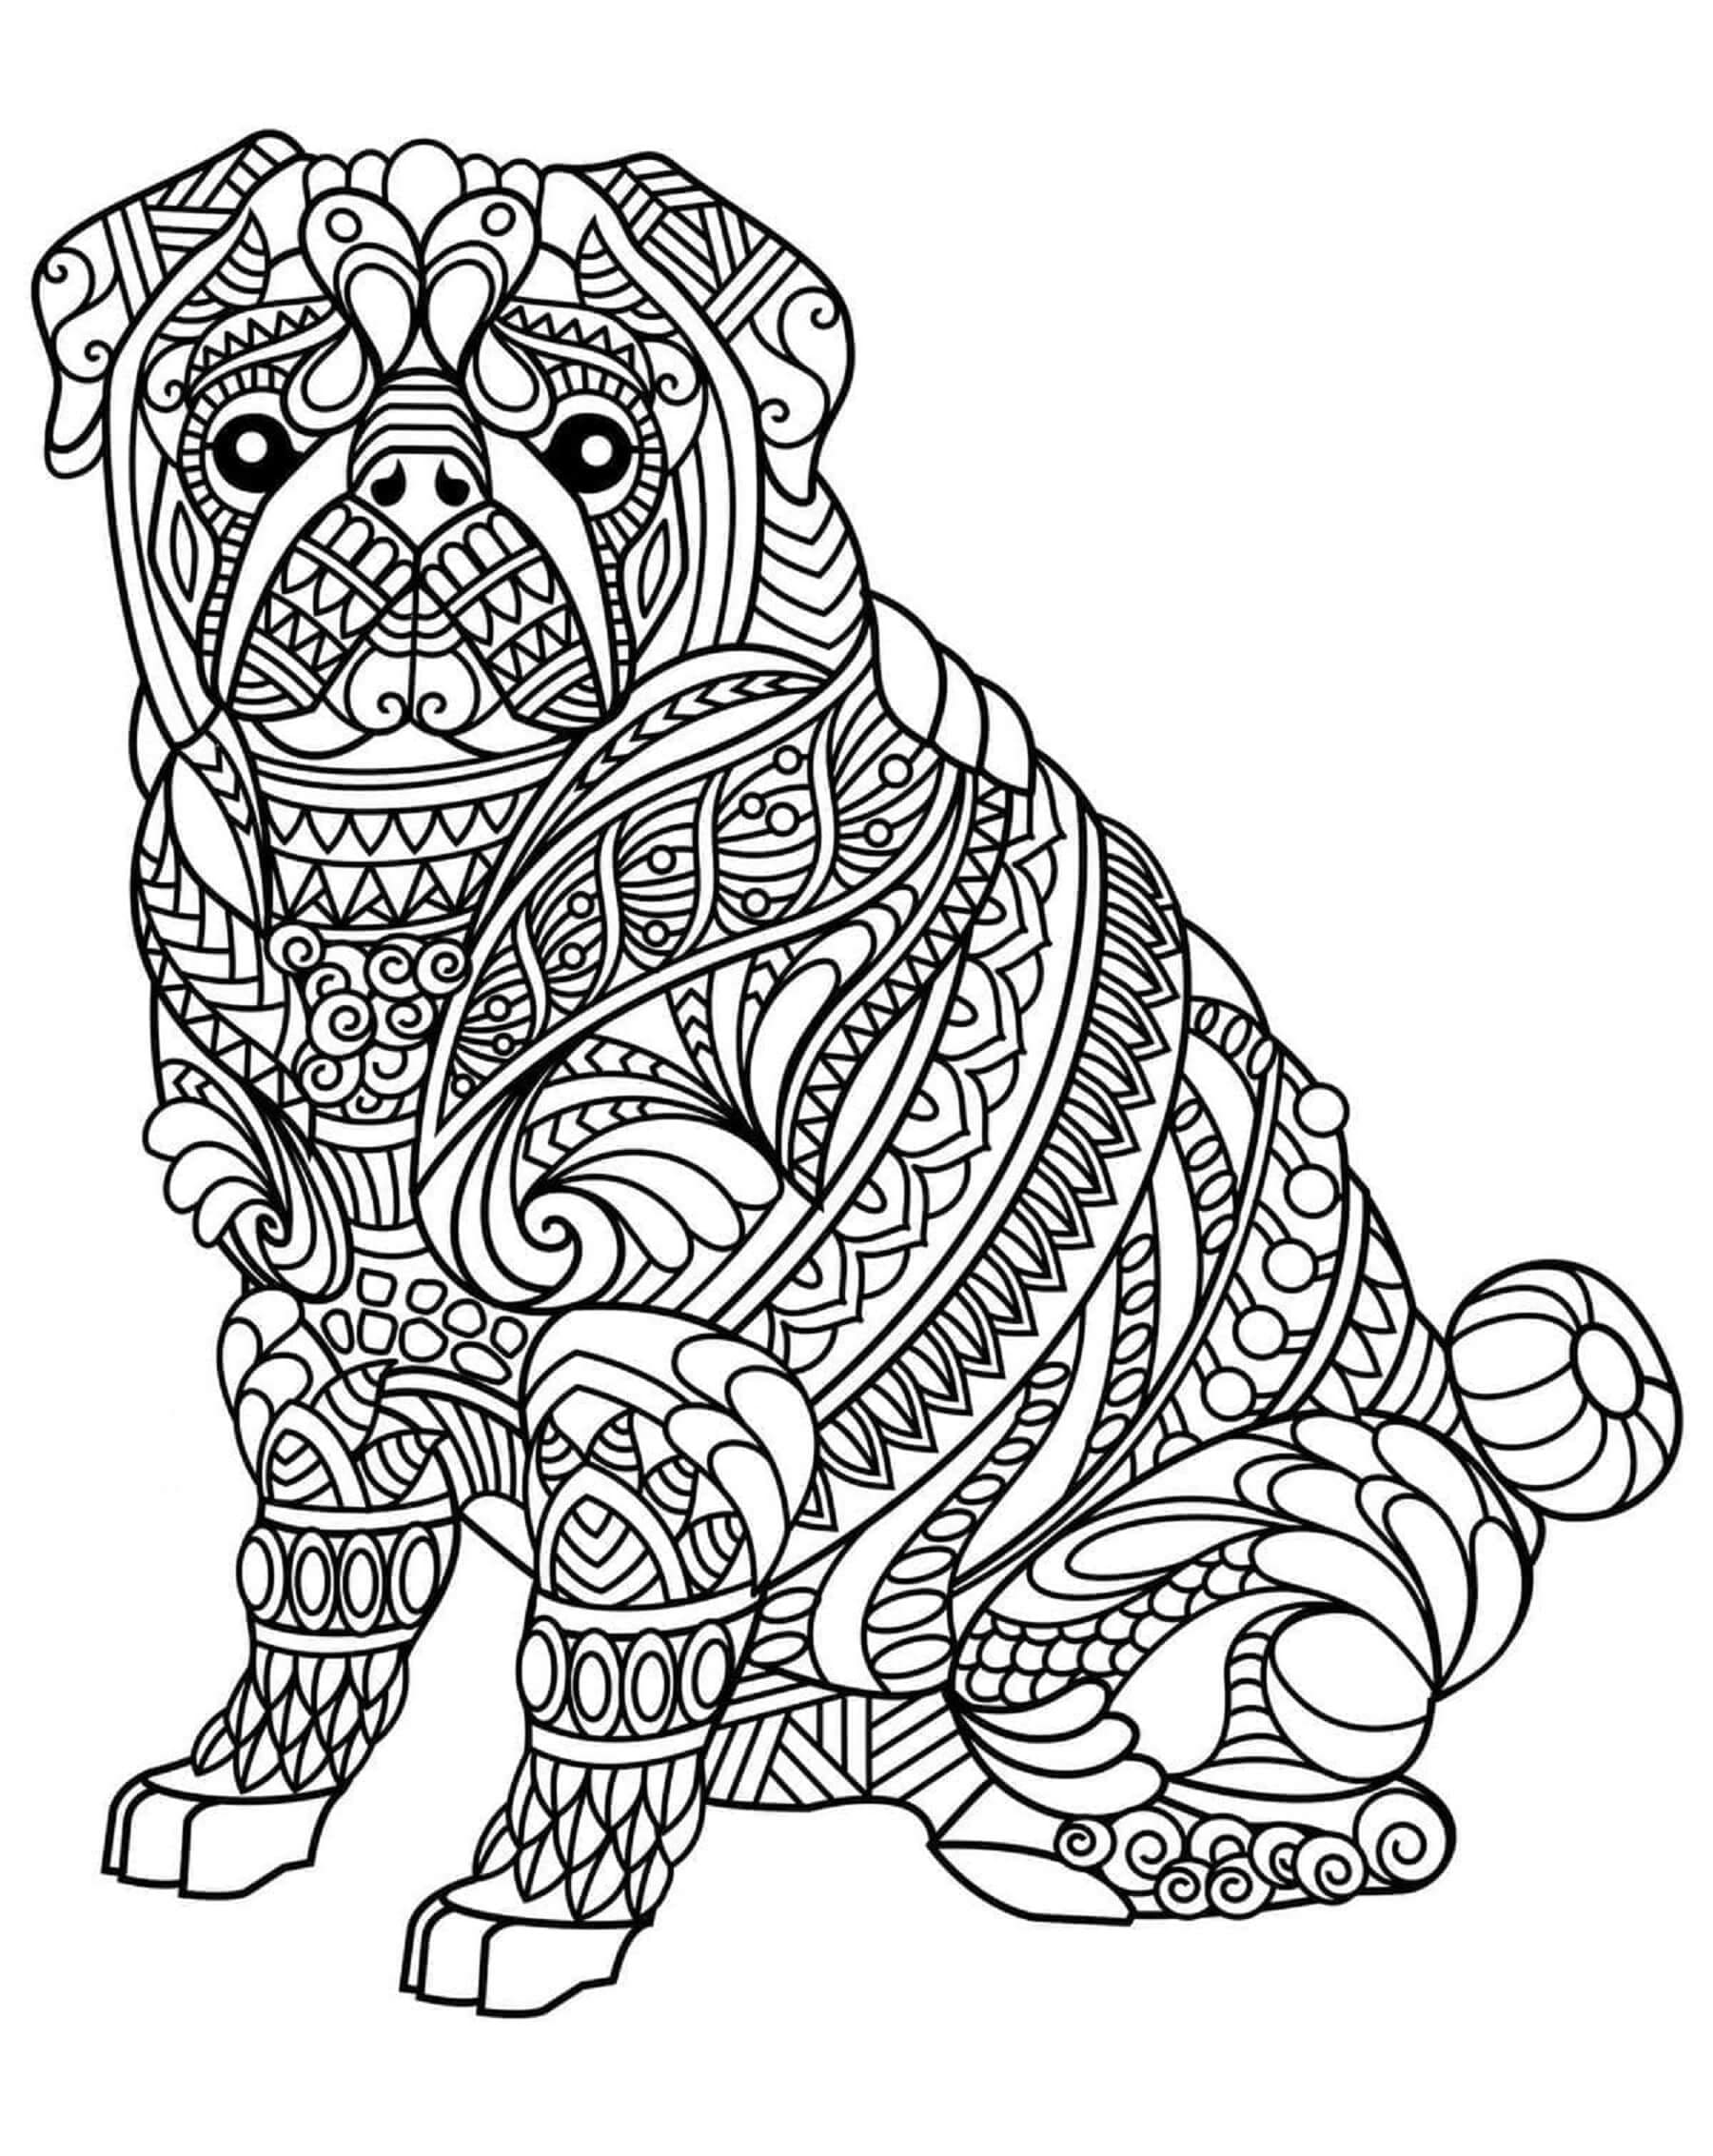 Dibujos de Imagen de Mandala de Perro gratis para colorear